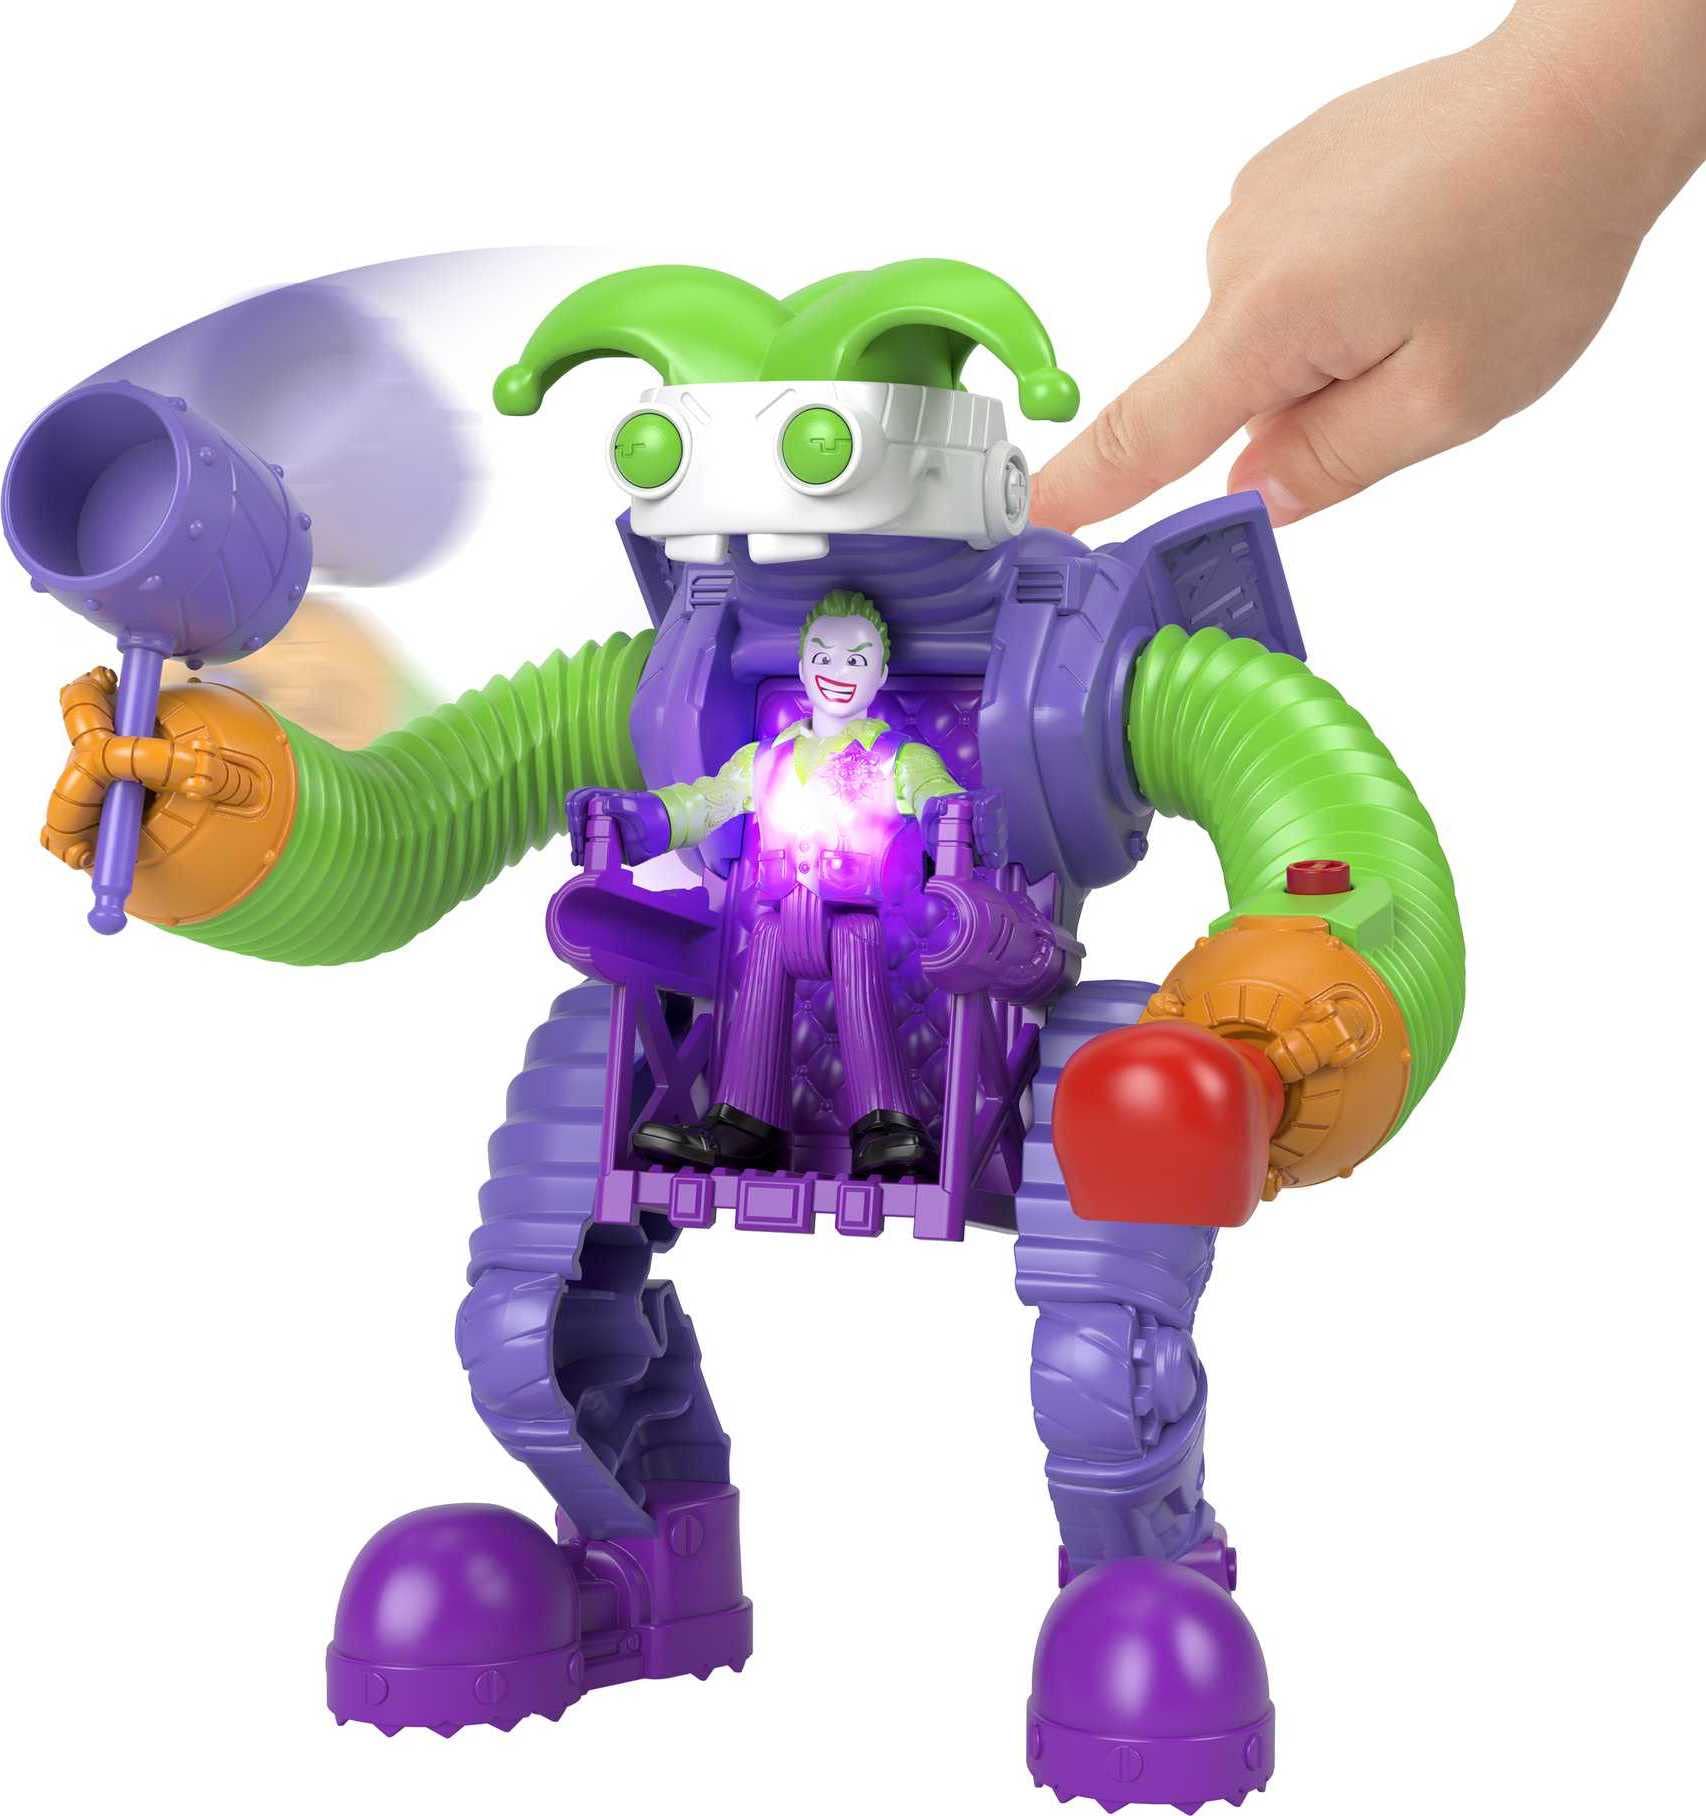 Imaginext Dc Super Friends the Joker Battling Robot, 3-Piece Figure Set with Lights for Preschool Kids